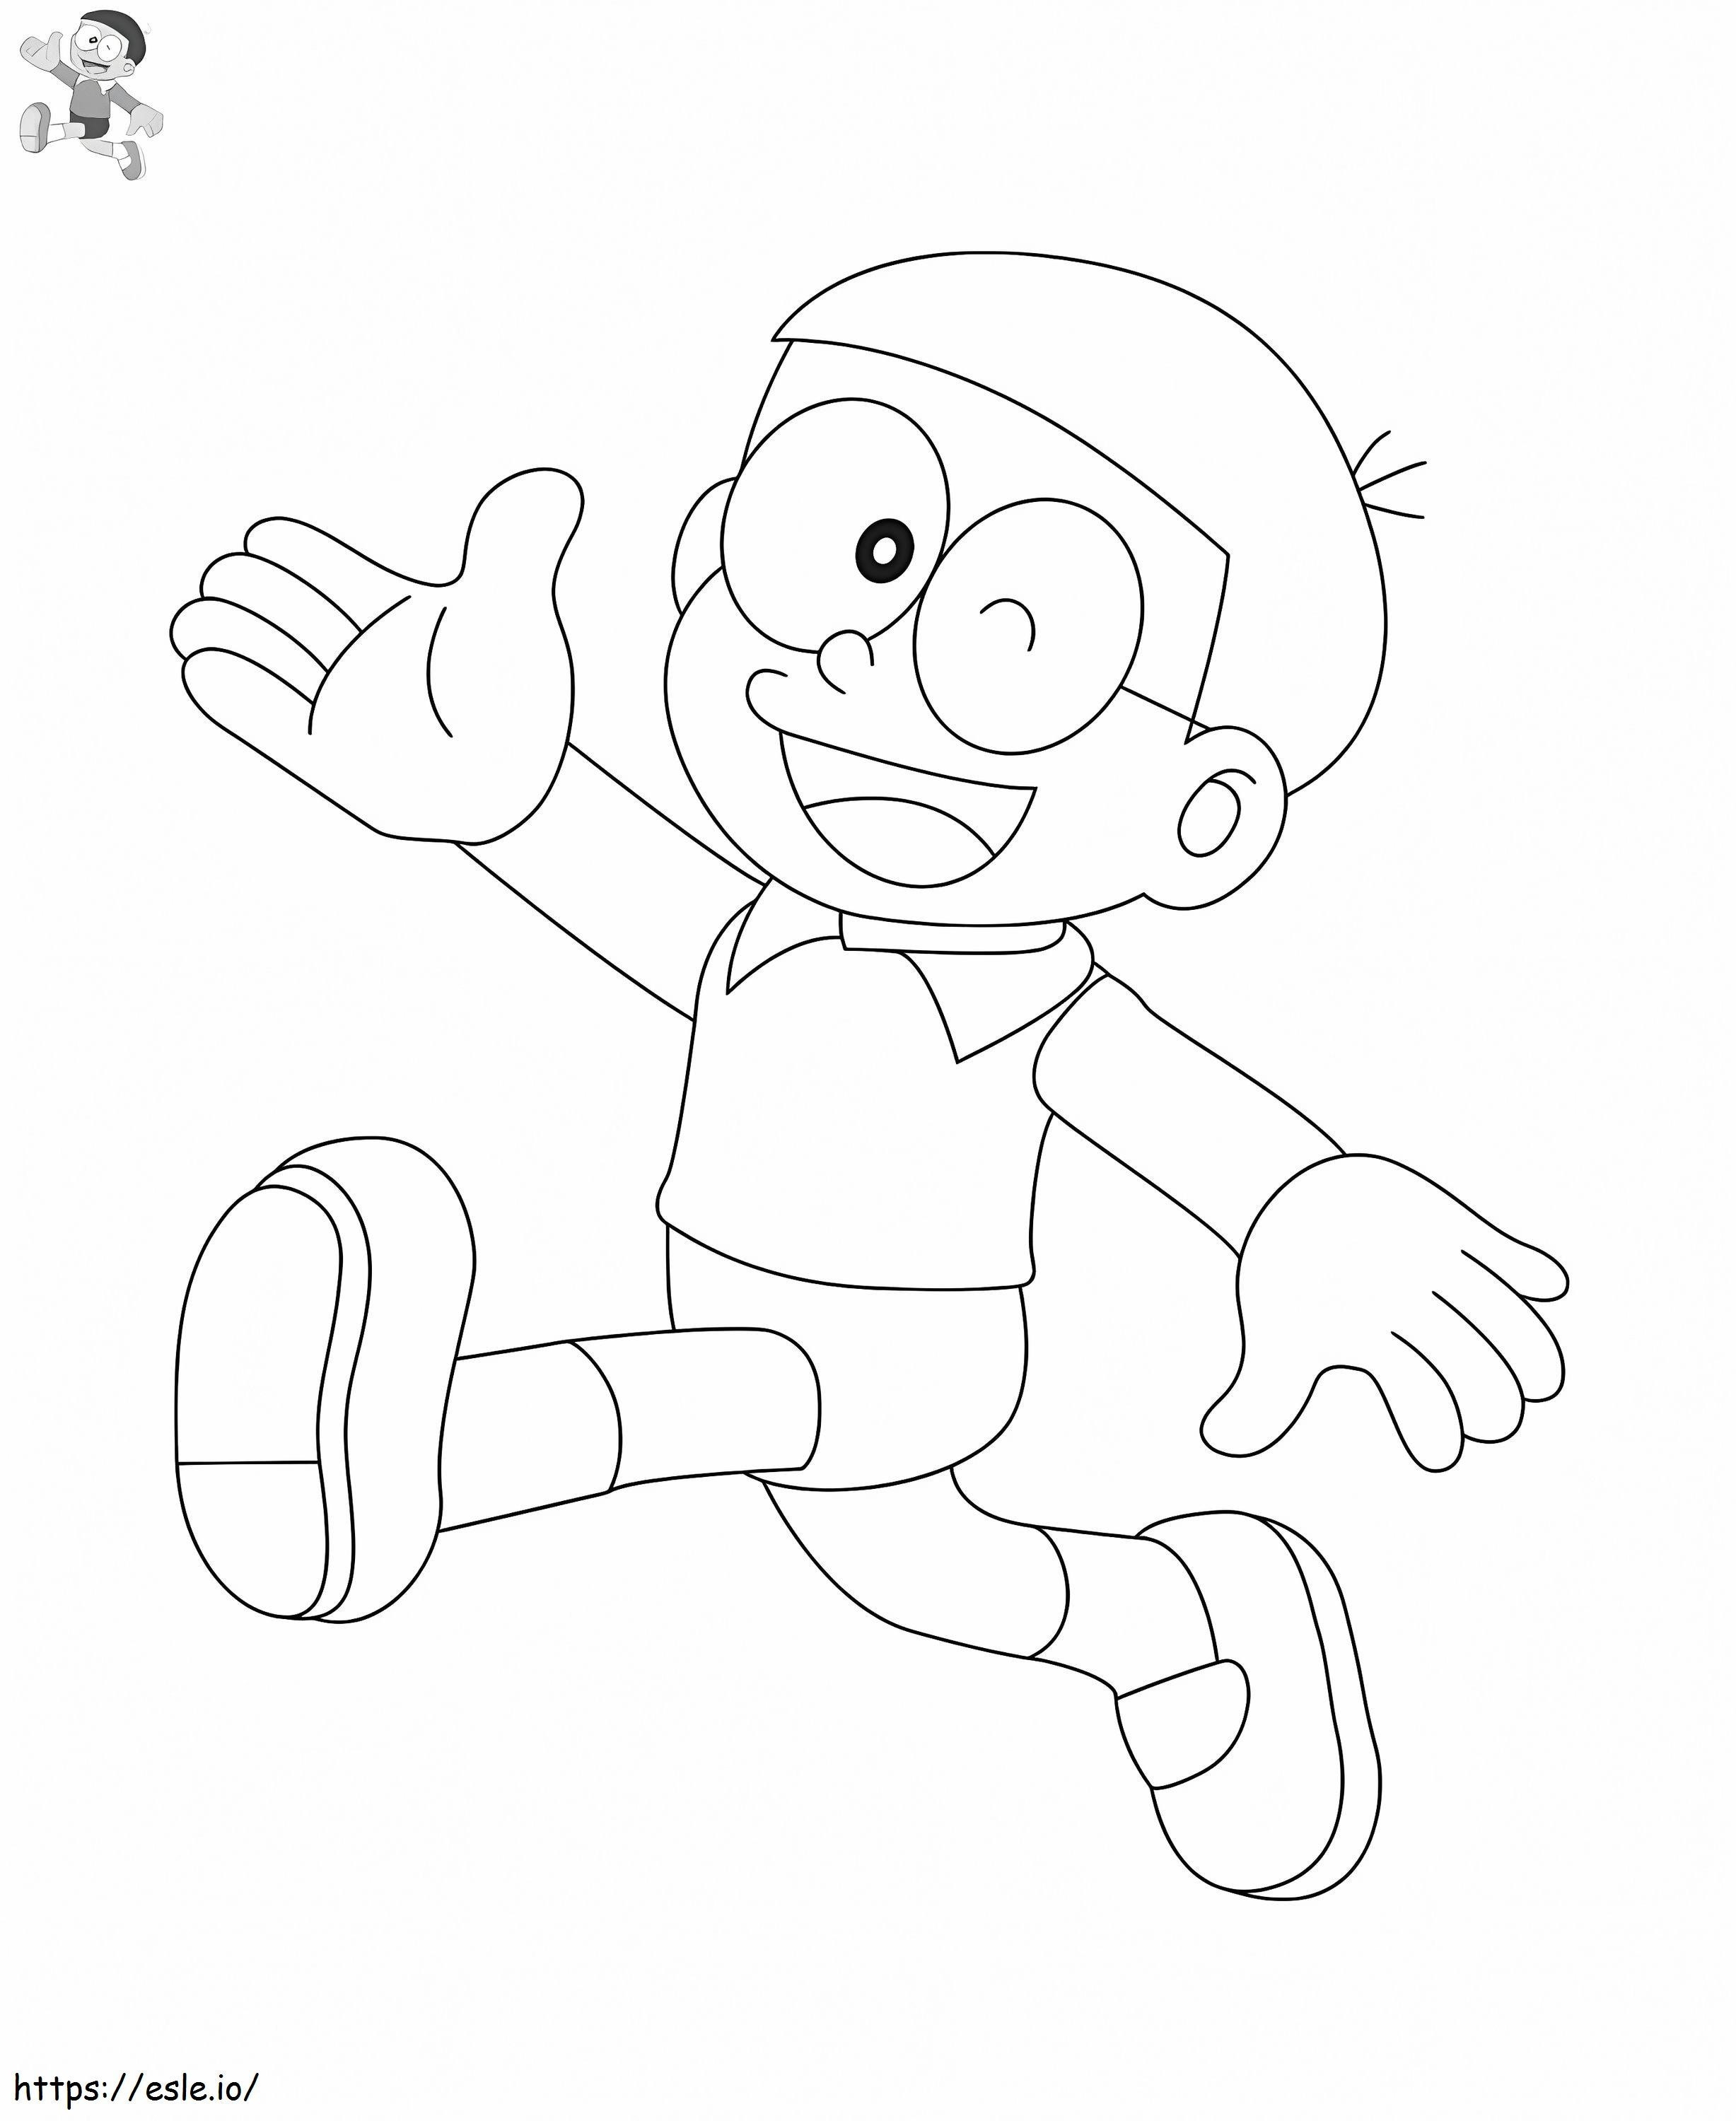 Nobita corre da colorare